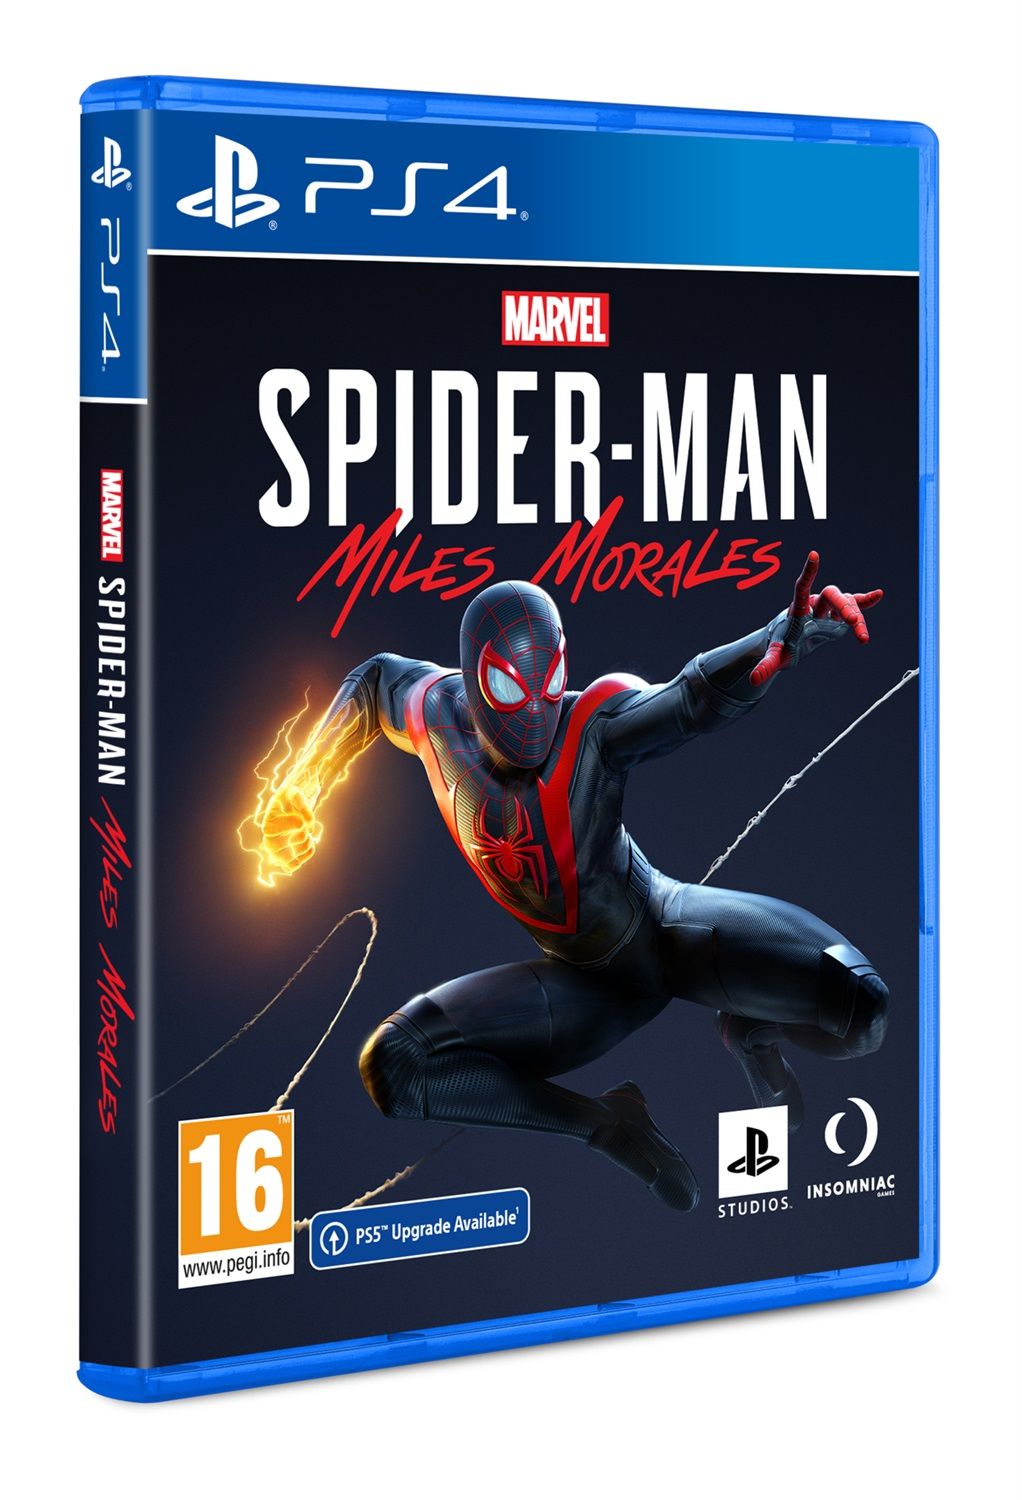 Marvel's Spider-Man Miles Morales, video confronta le versioni PC e PS5 